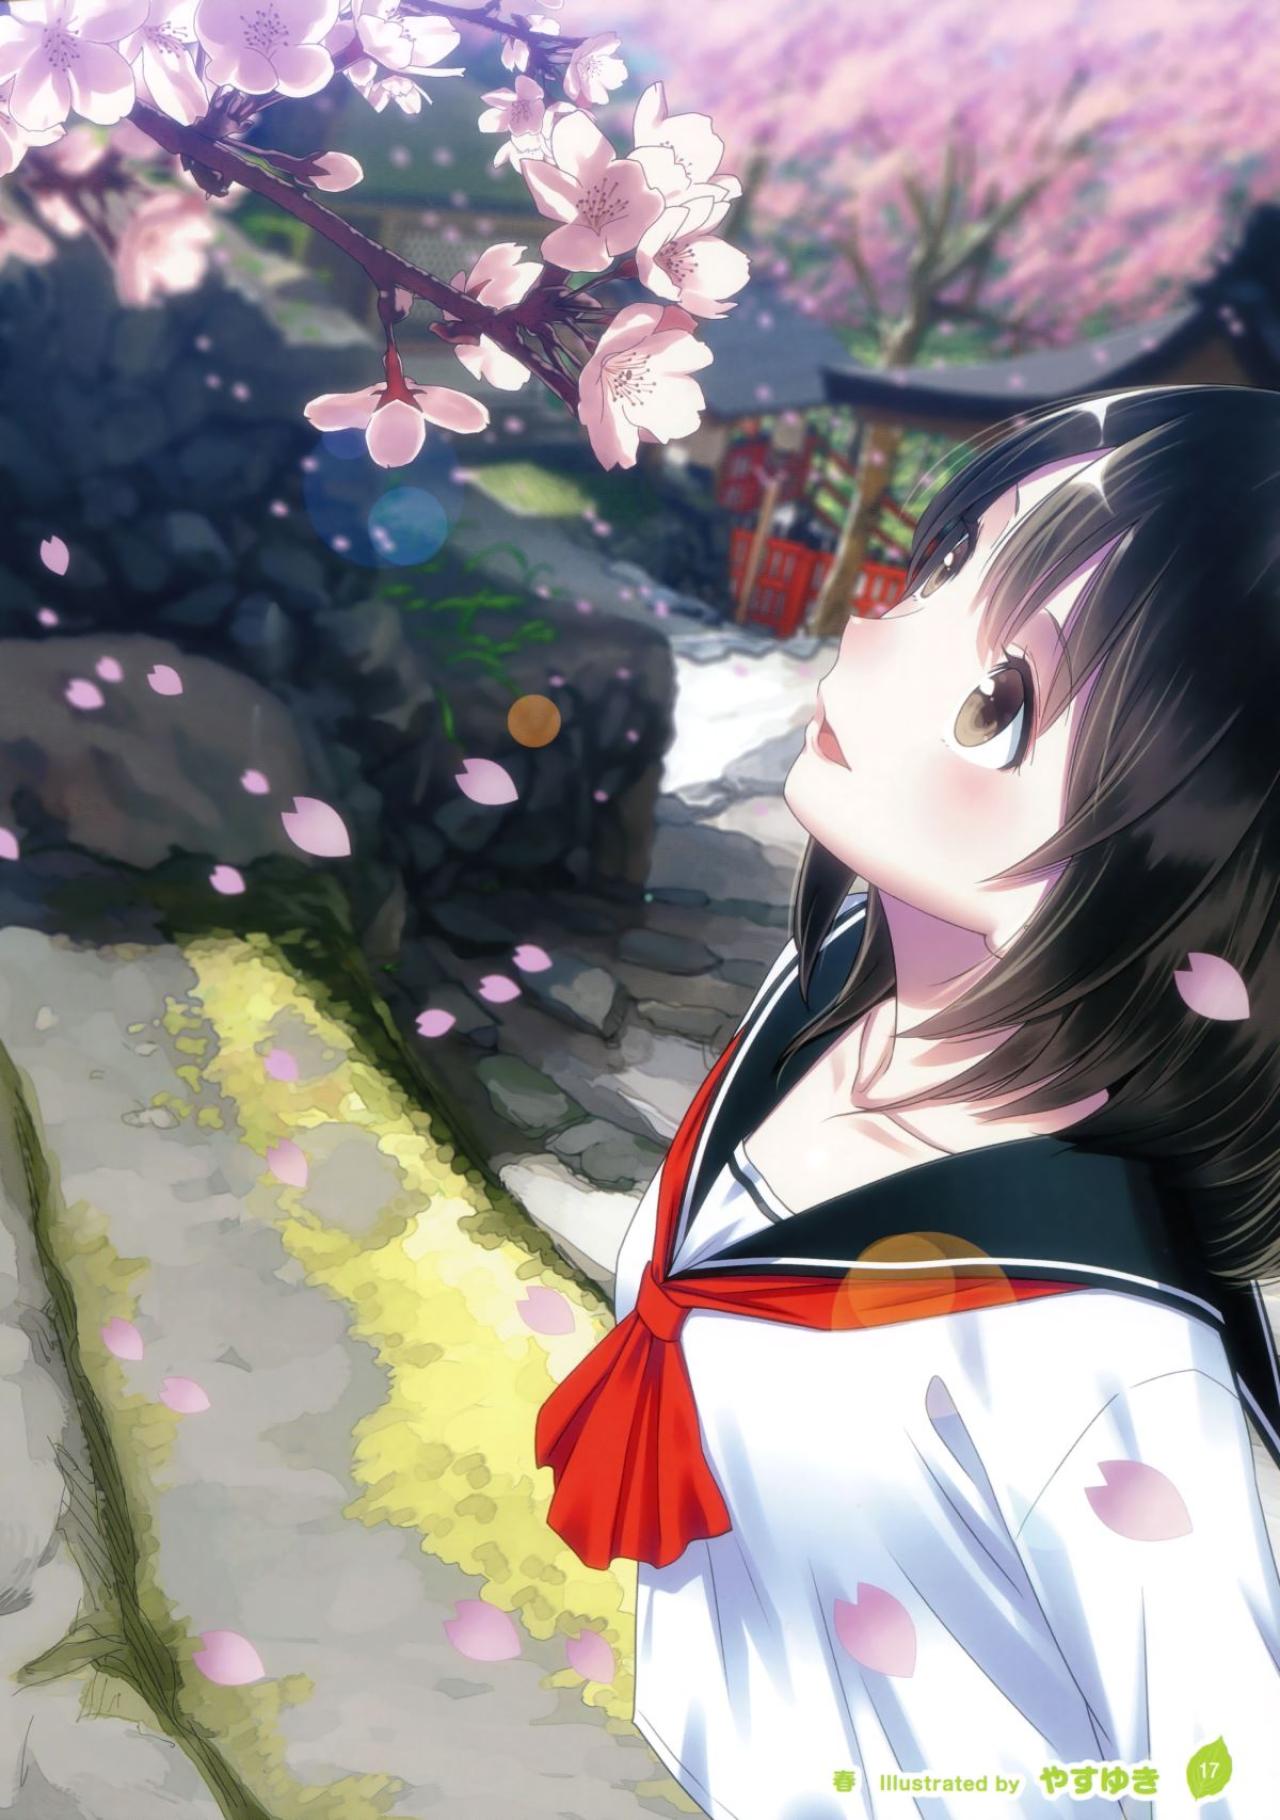 穿着水手服欣赏樱花的萌少女 原题“春” 画师见图